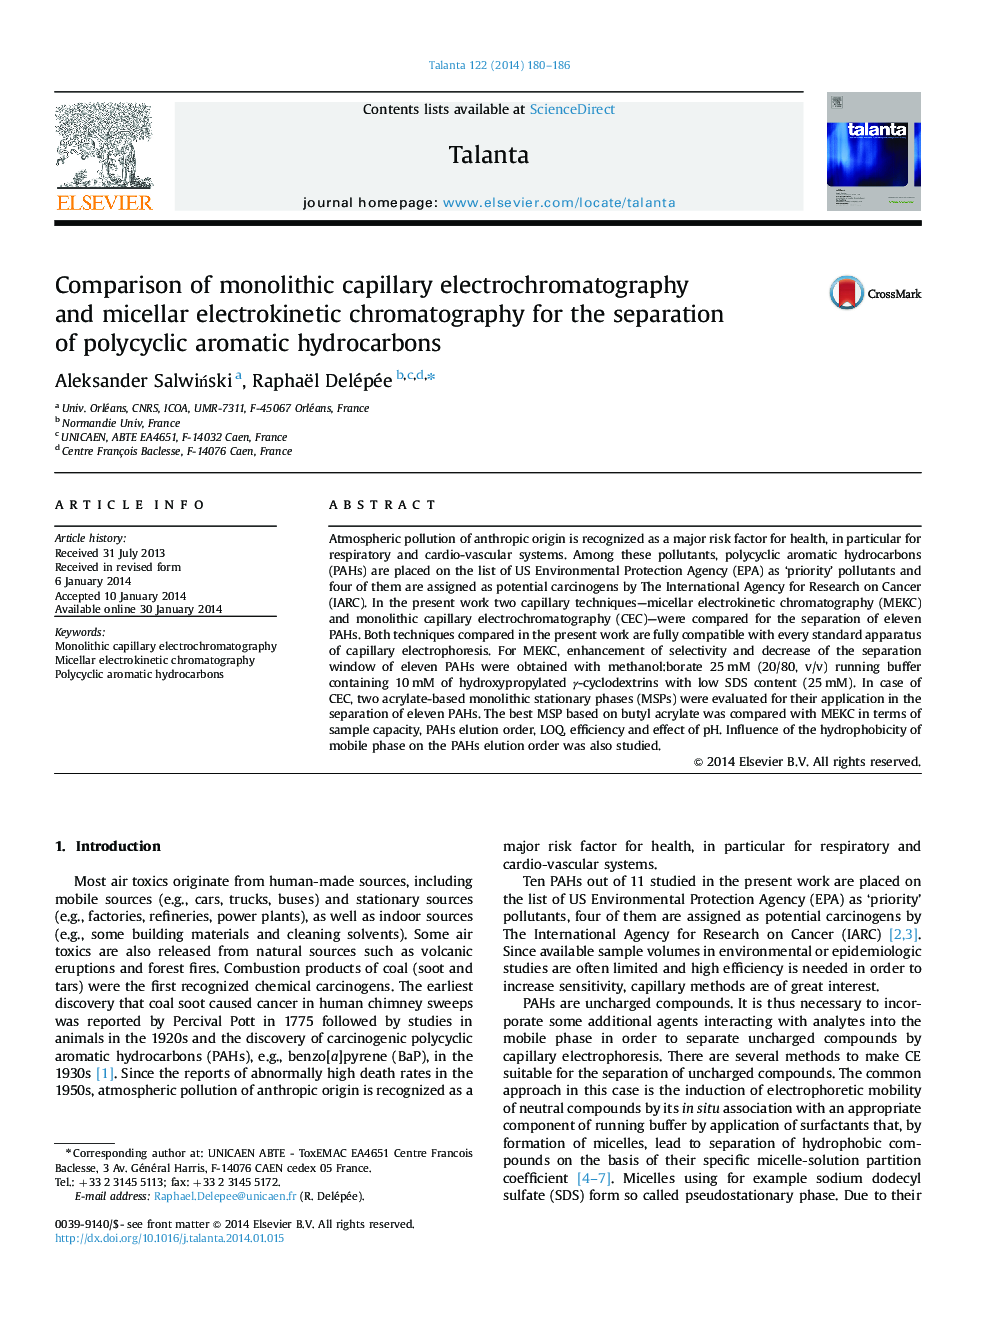 مقایسه الکتروکروماتوگرافی کاپیال یکپارچه و کروماتوگرافی الکترو کینتیک میکسل برای جداسازی هیدروکربن های آروماتیک چند حلقه ای 